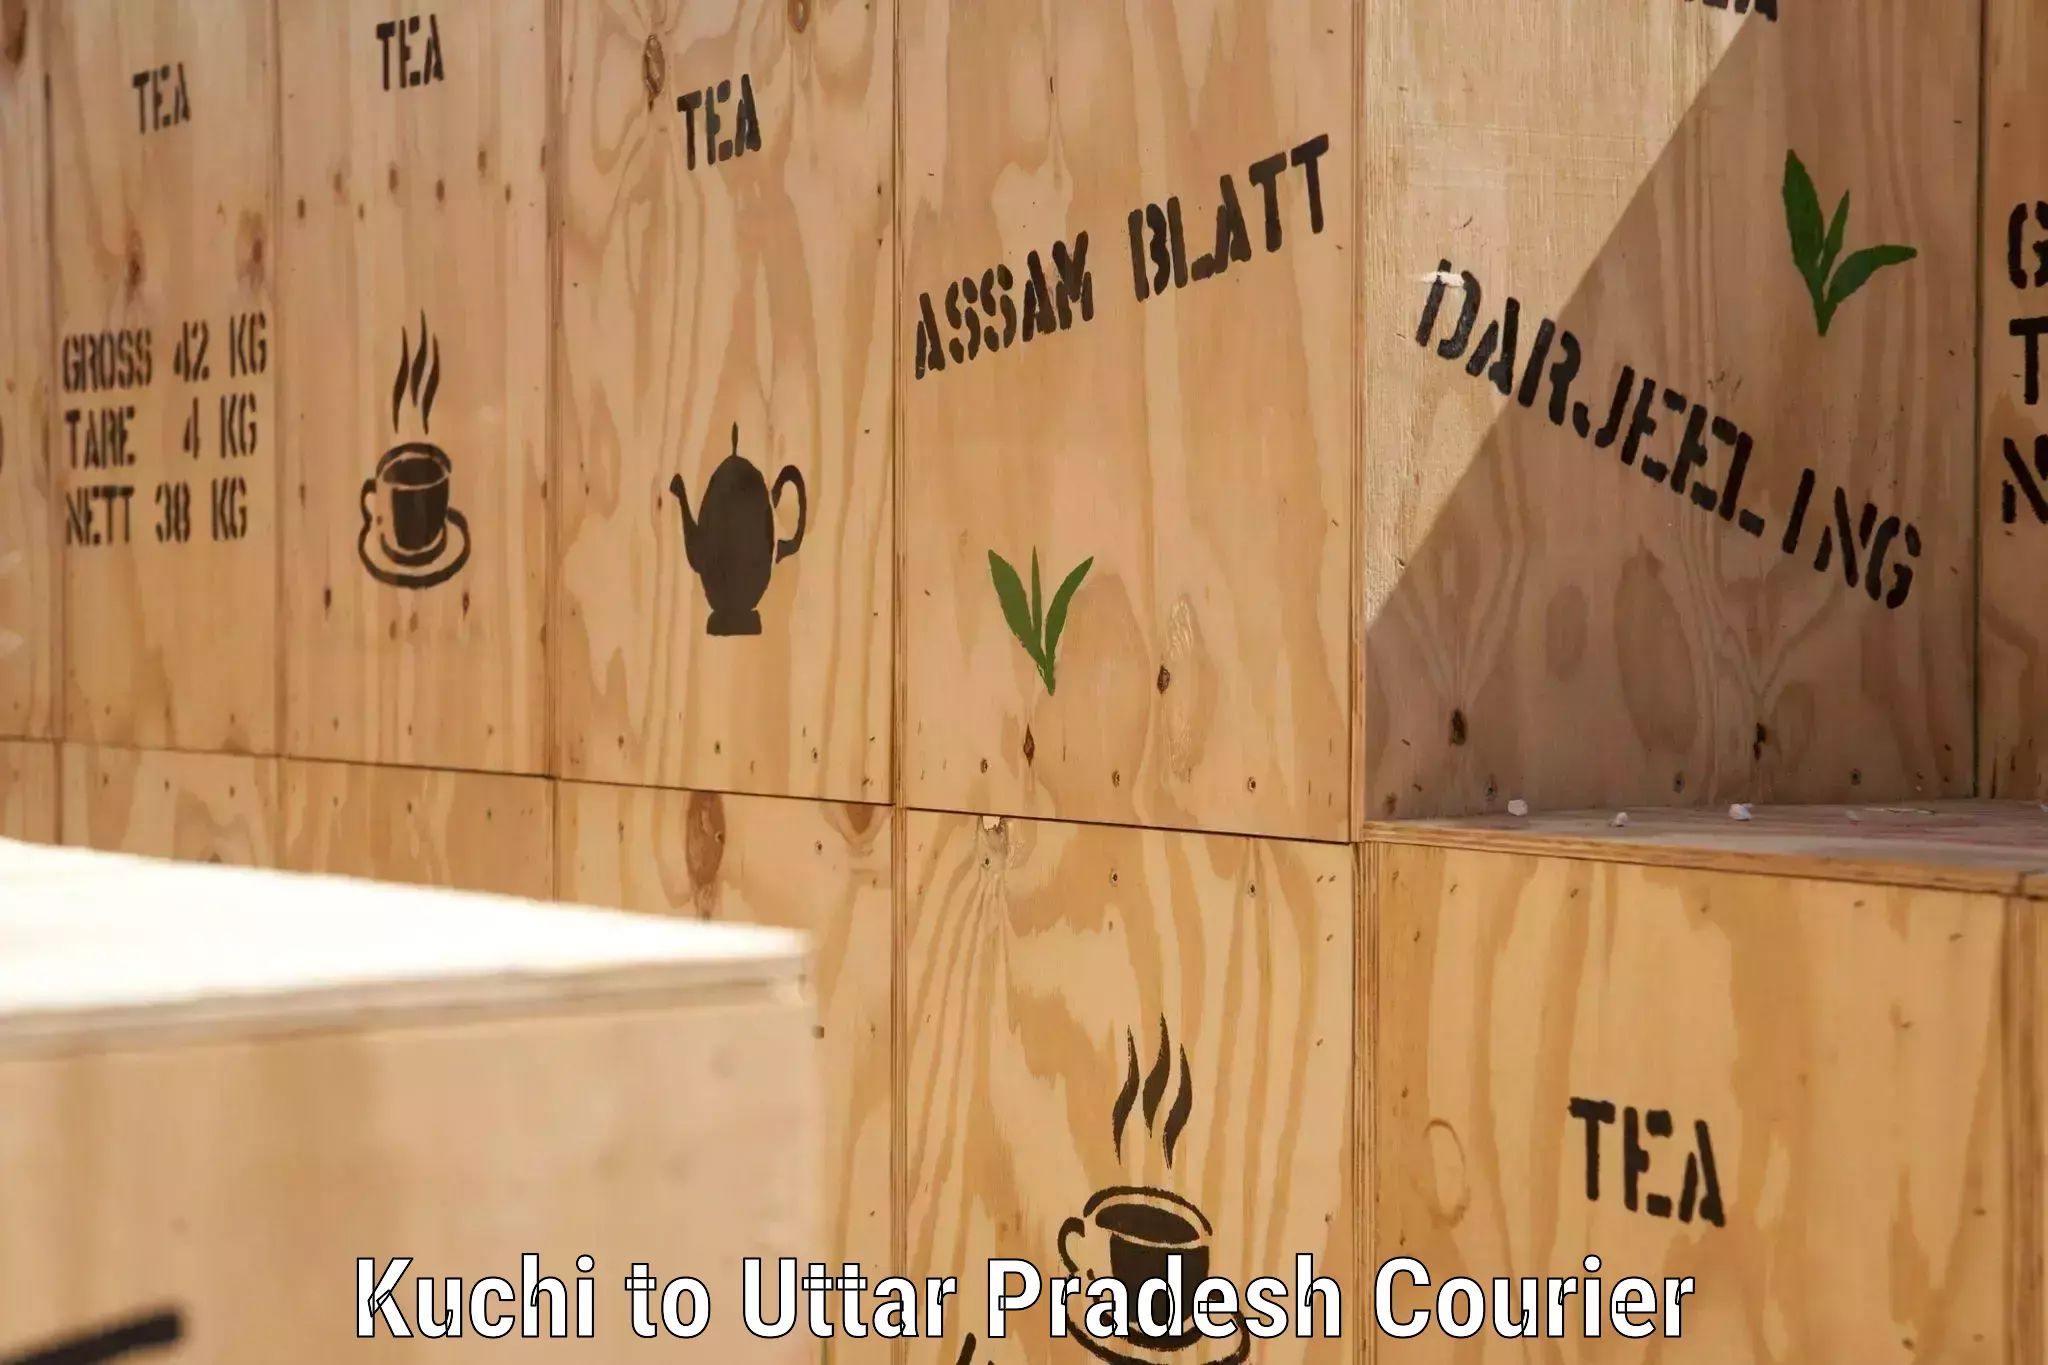 Efficient parcel service in Kuchi to Uttar Pradesh